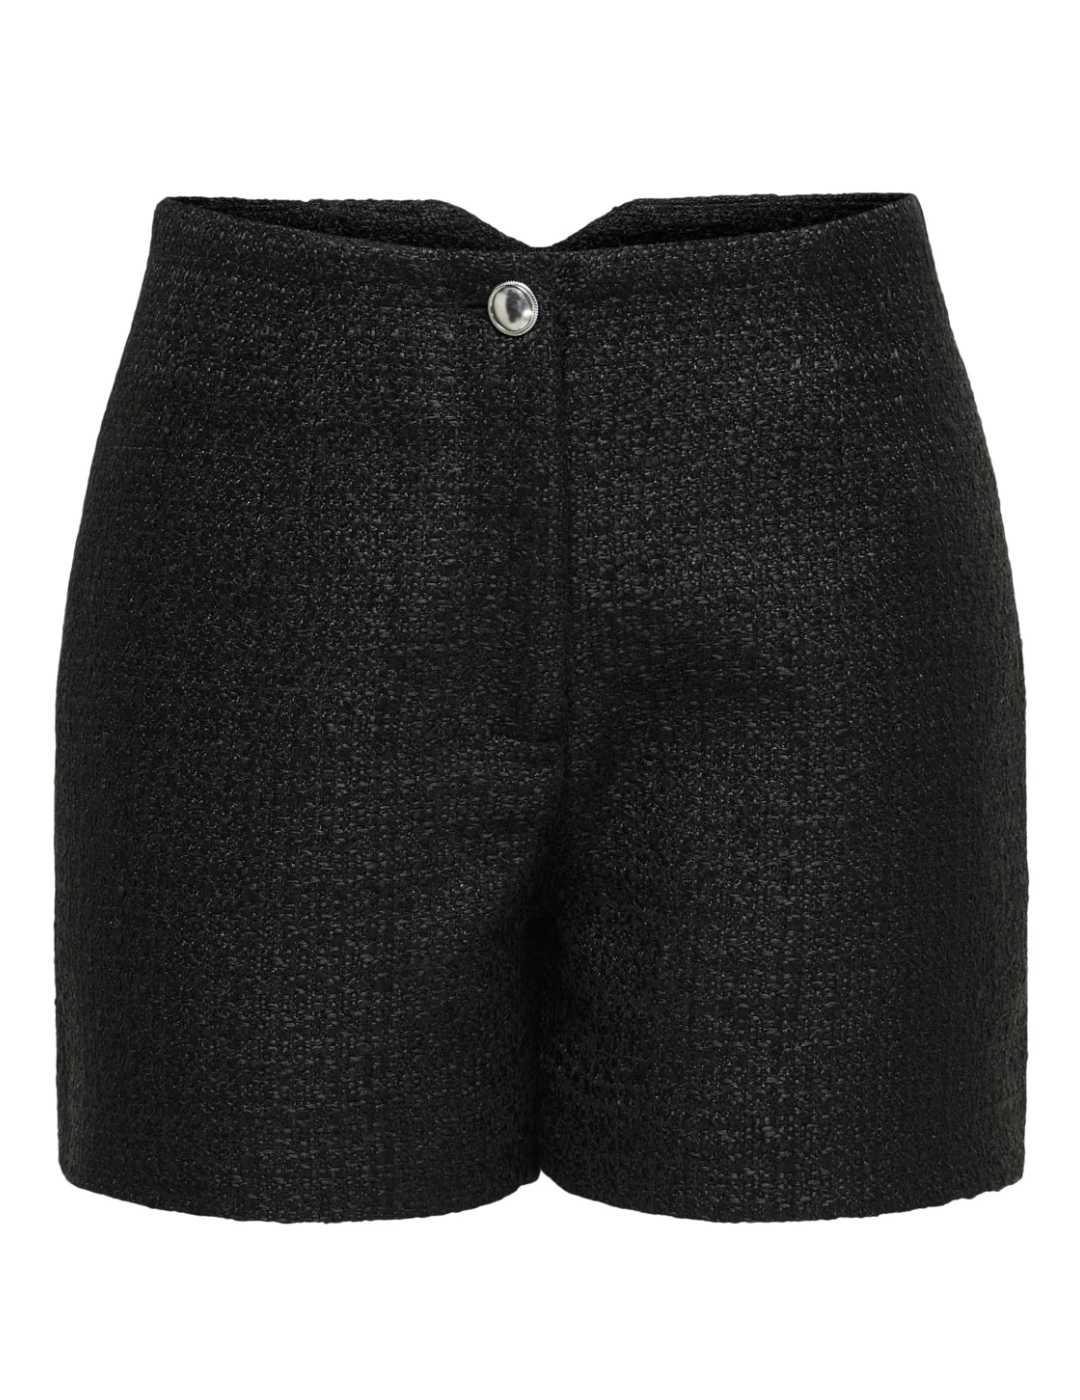 Pantalón corto Only Avery tejido tweed negro de mujer